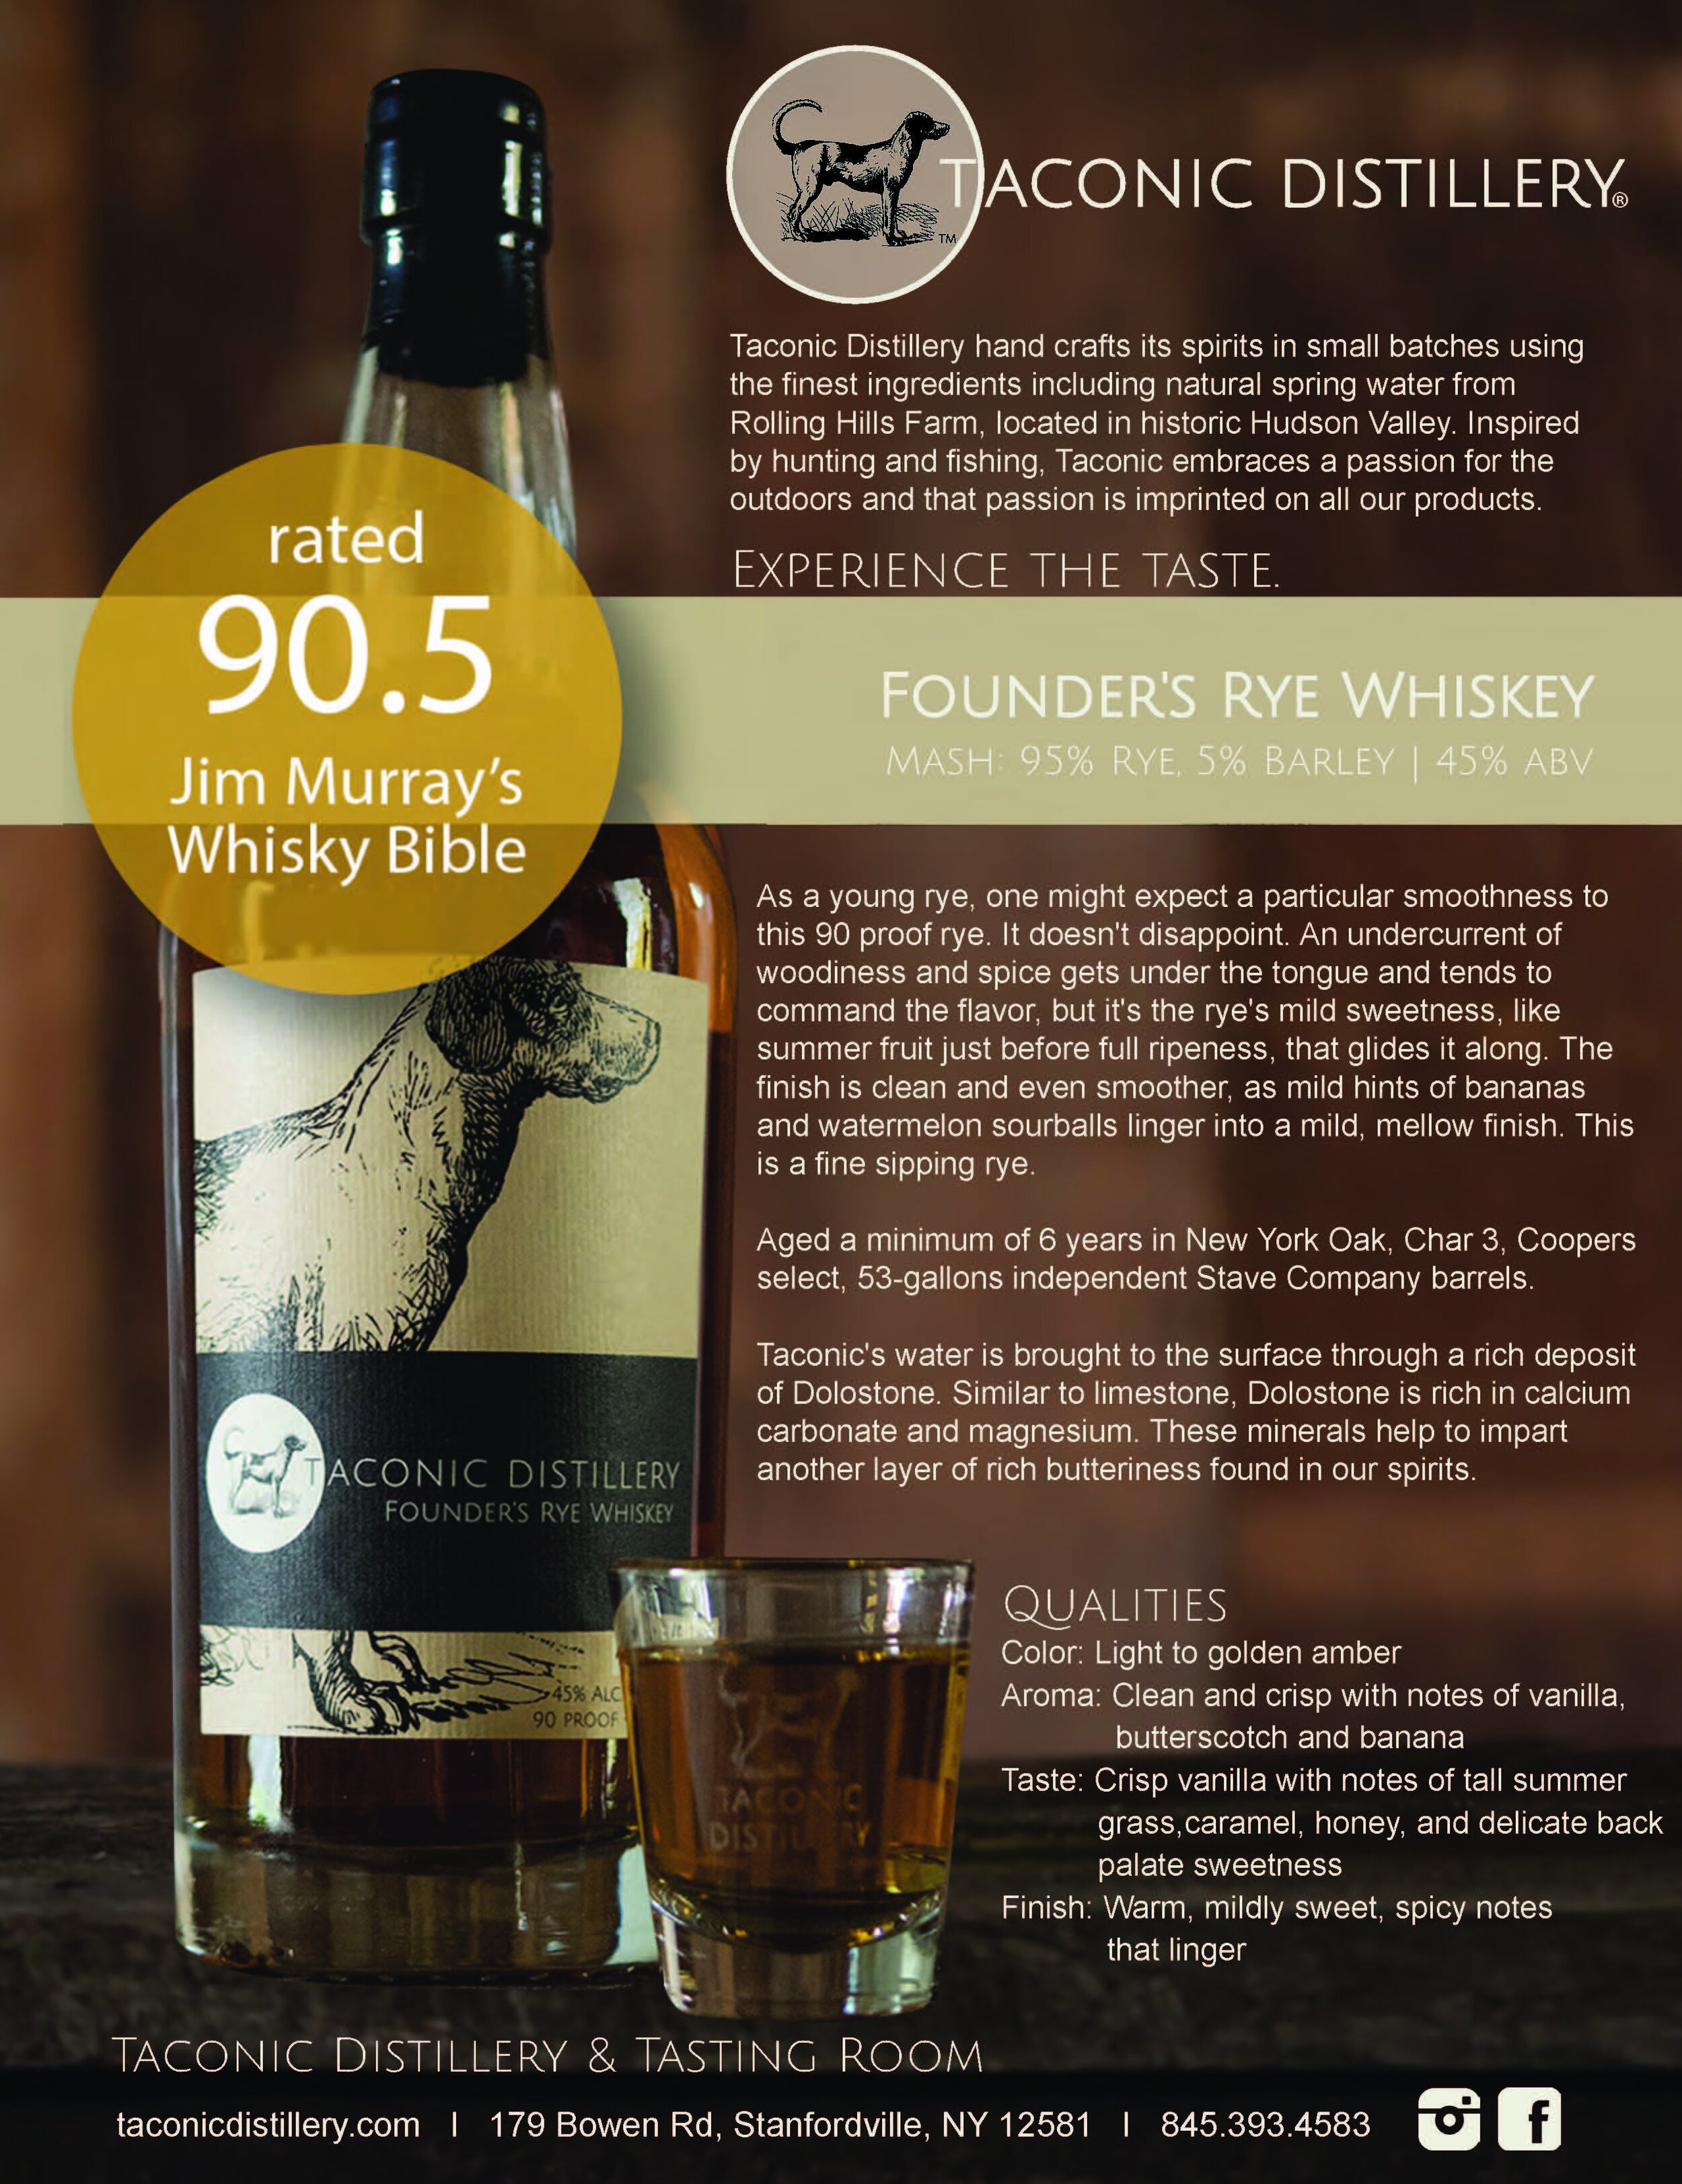 Founder's Rye Whiskey